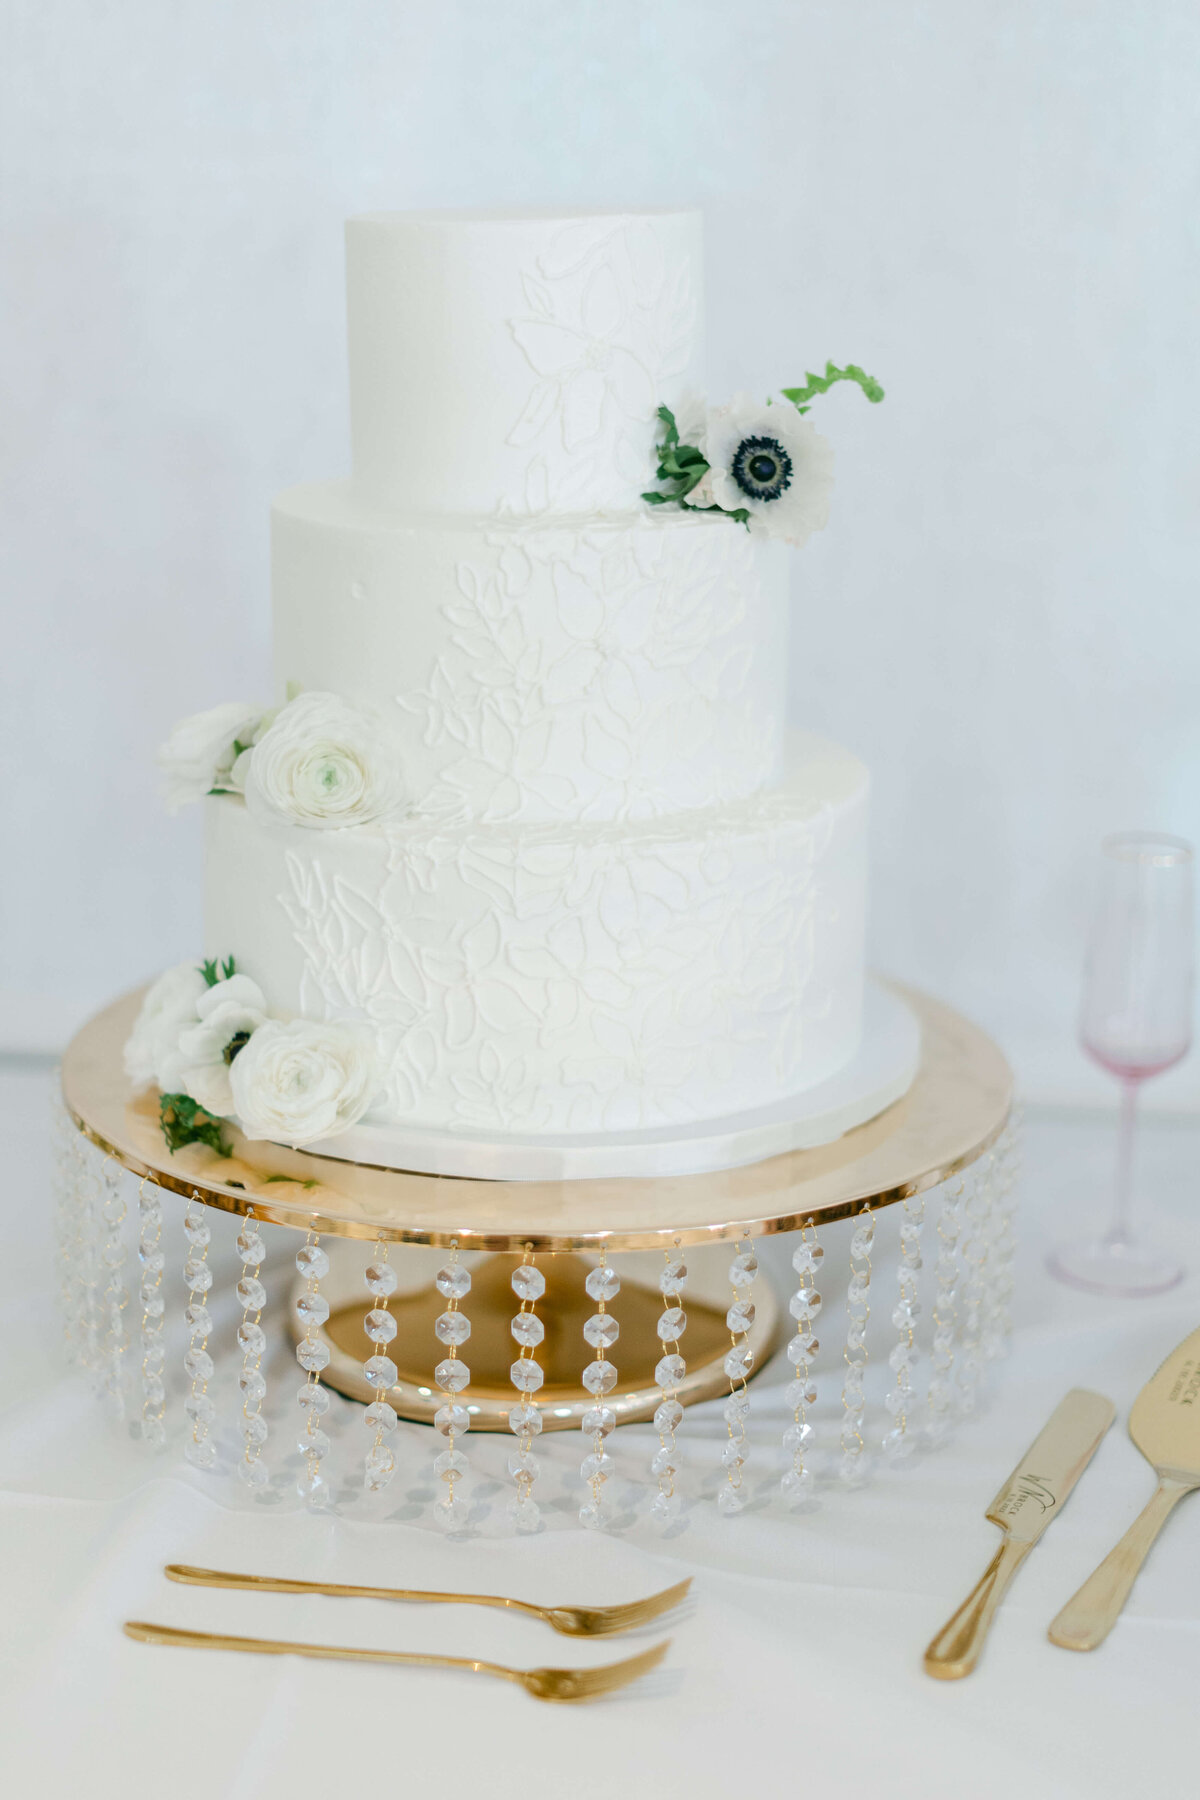 A wedding cake sits on a golden platter.